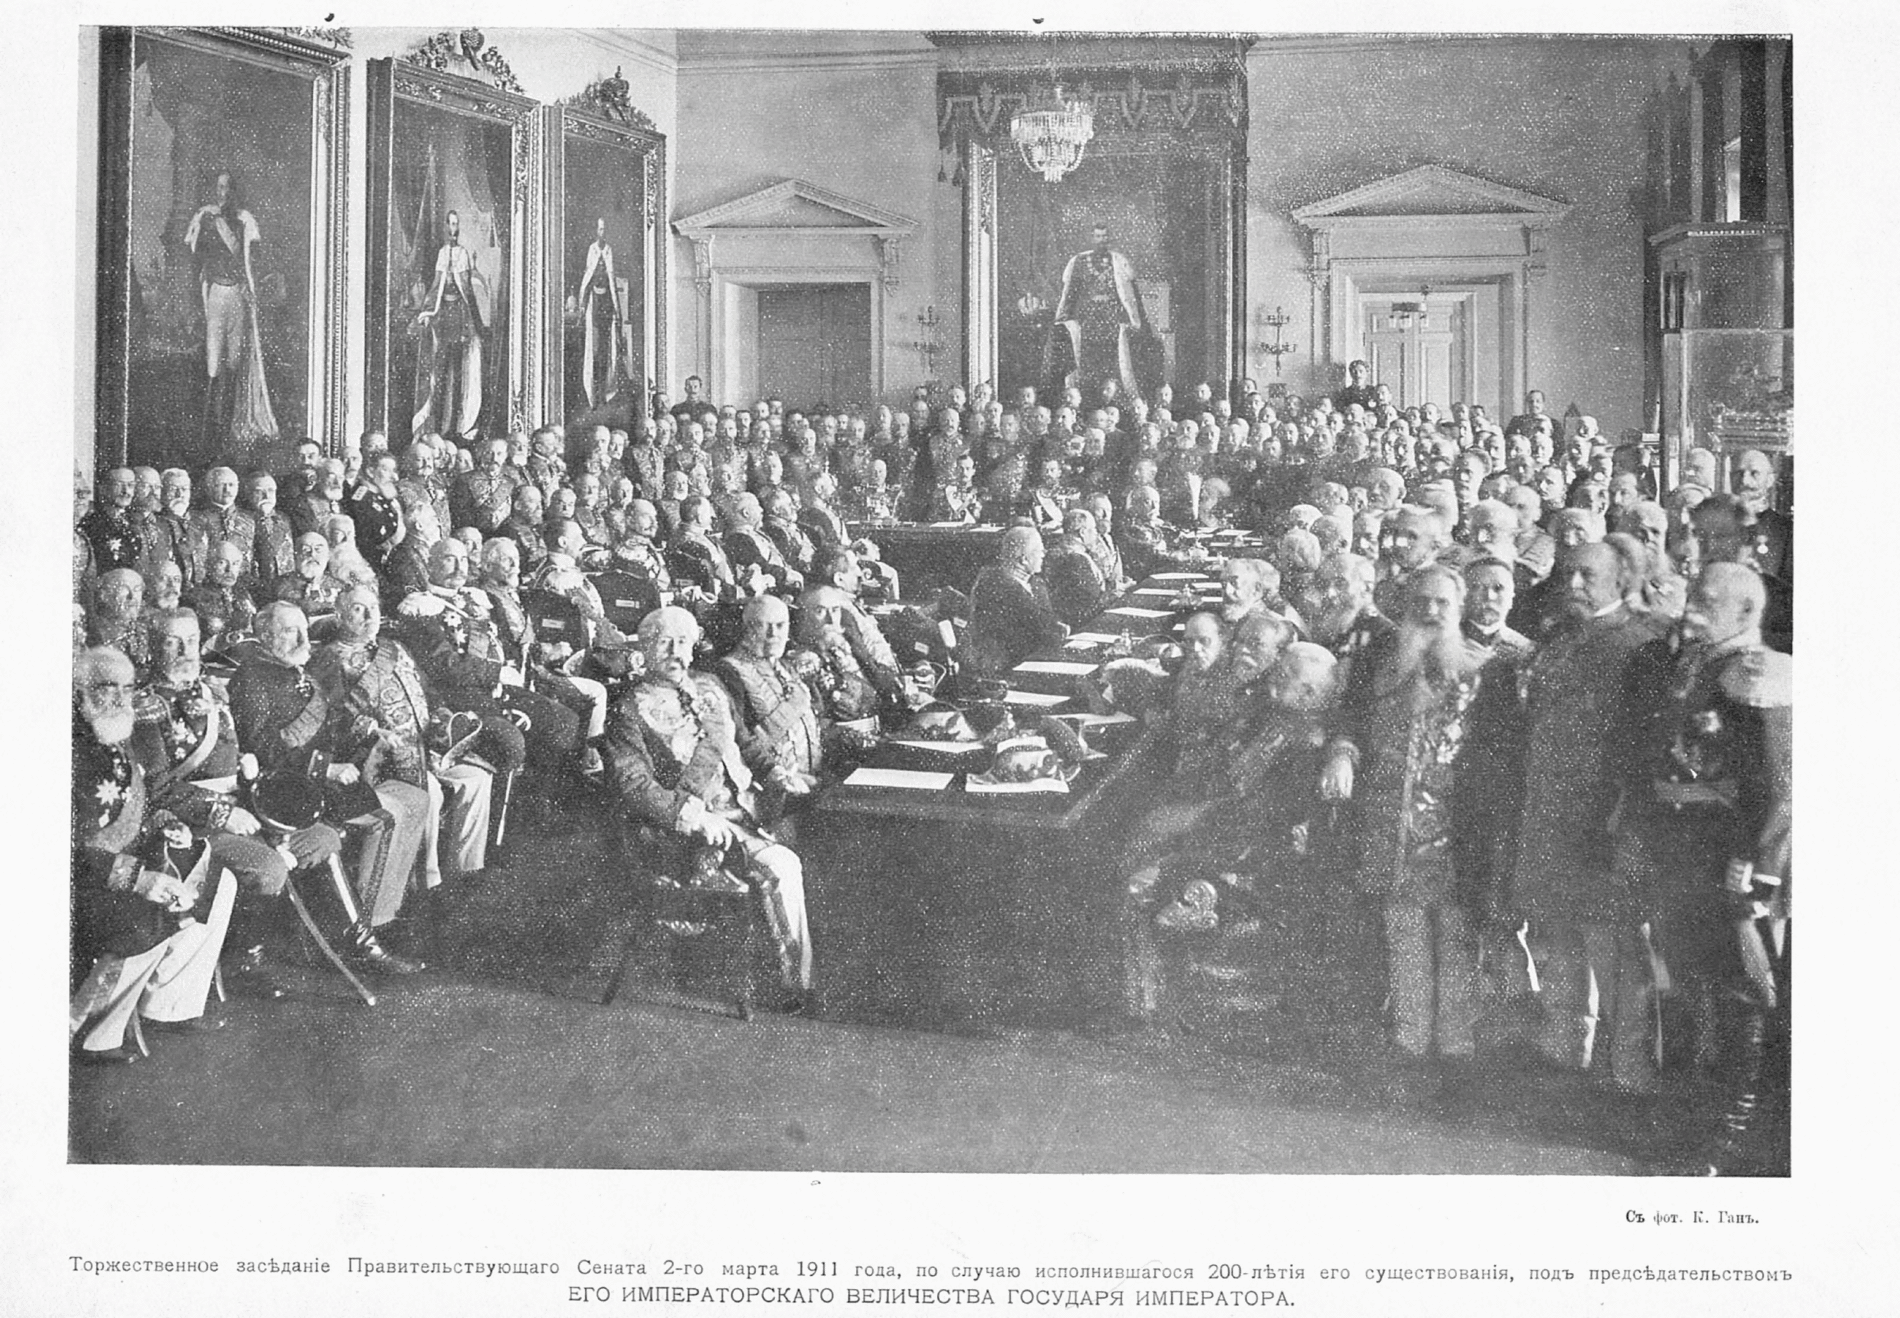 6 учреждение государственного совета. Правительствующий Сенат Российской империи. Заседание Правительствующего Сената при Петре 1. Сенат Петра 1. Сенат 1711 года.